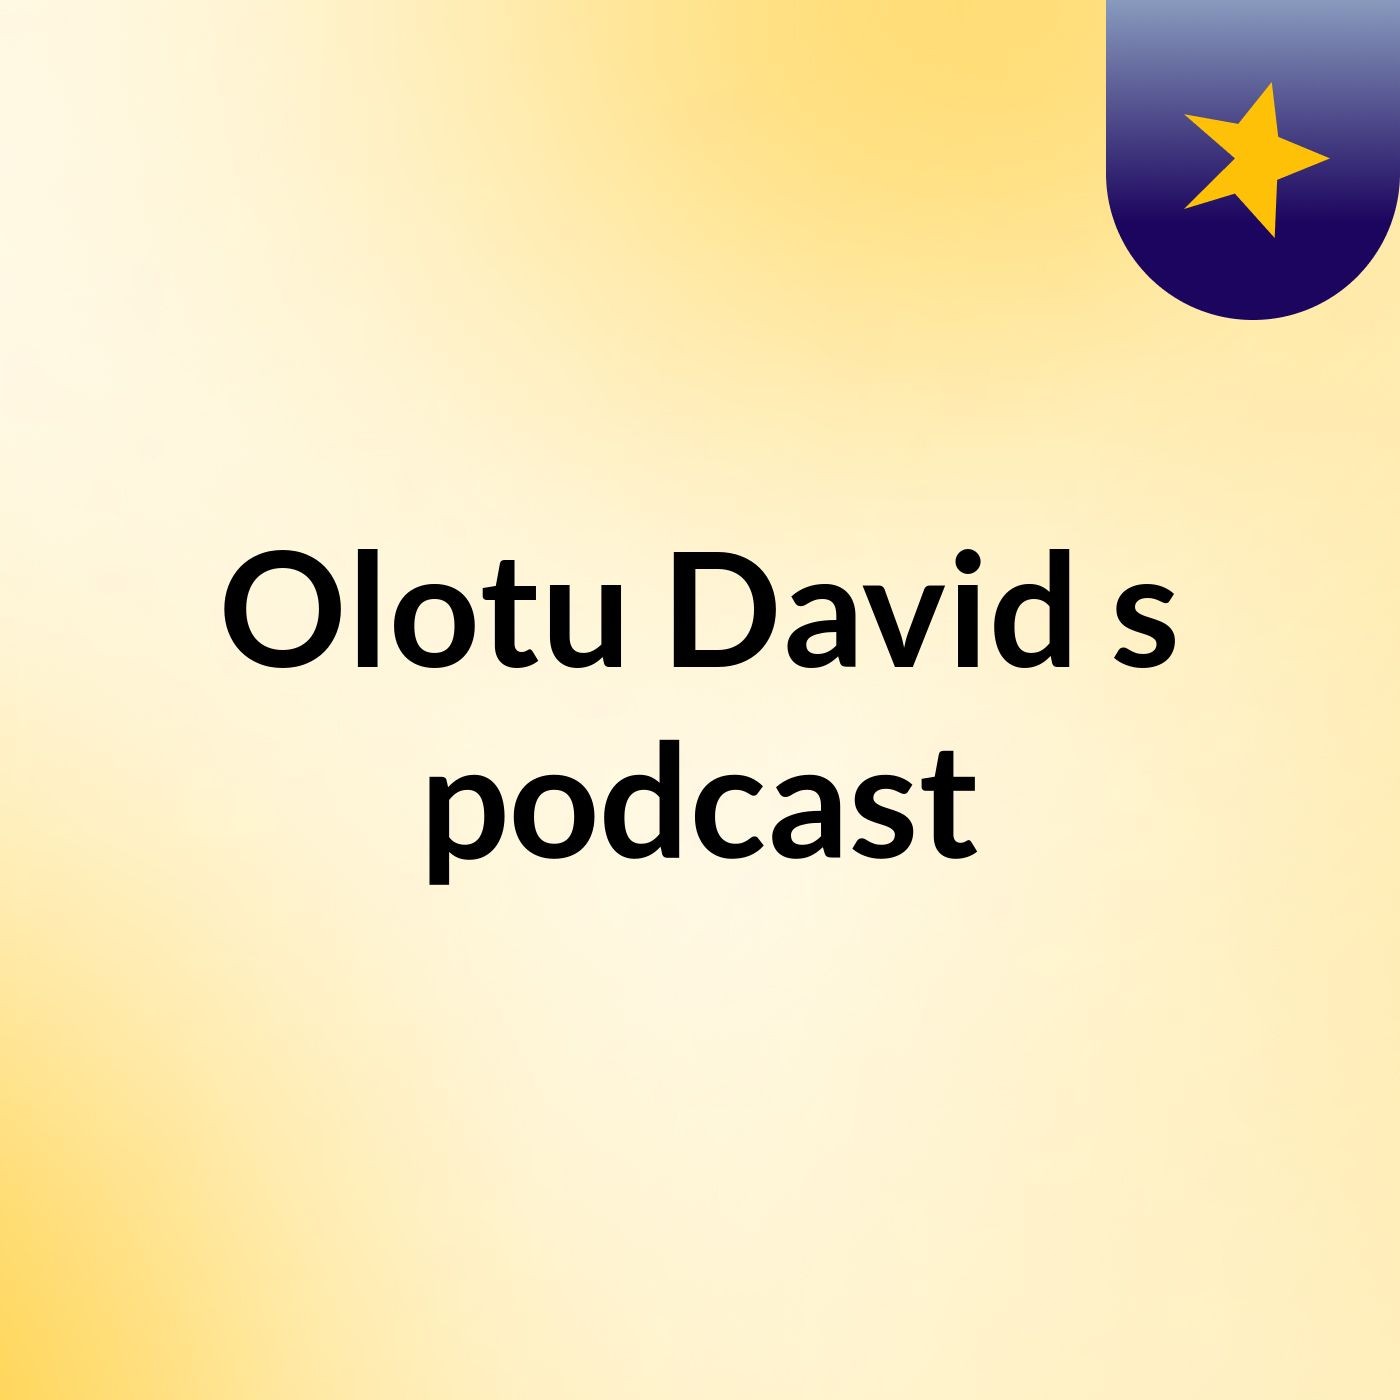 Olotu David's podcast